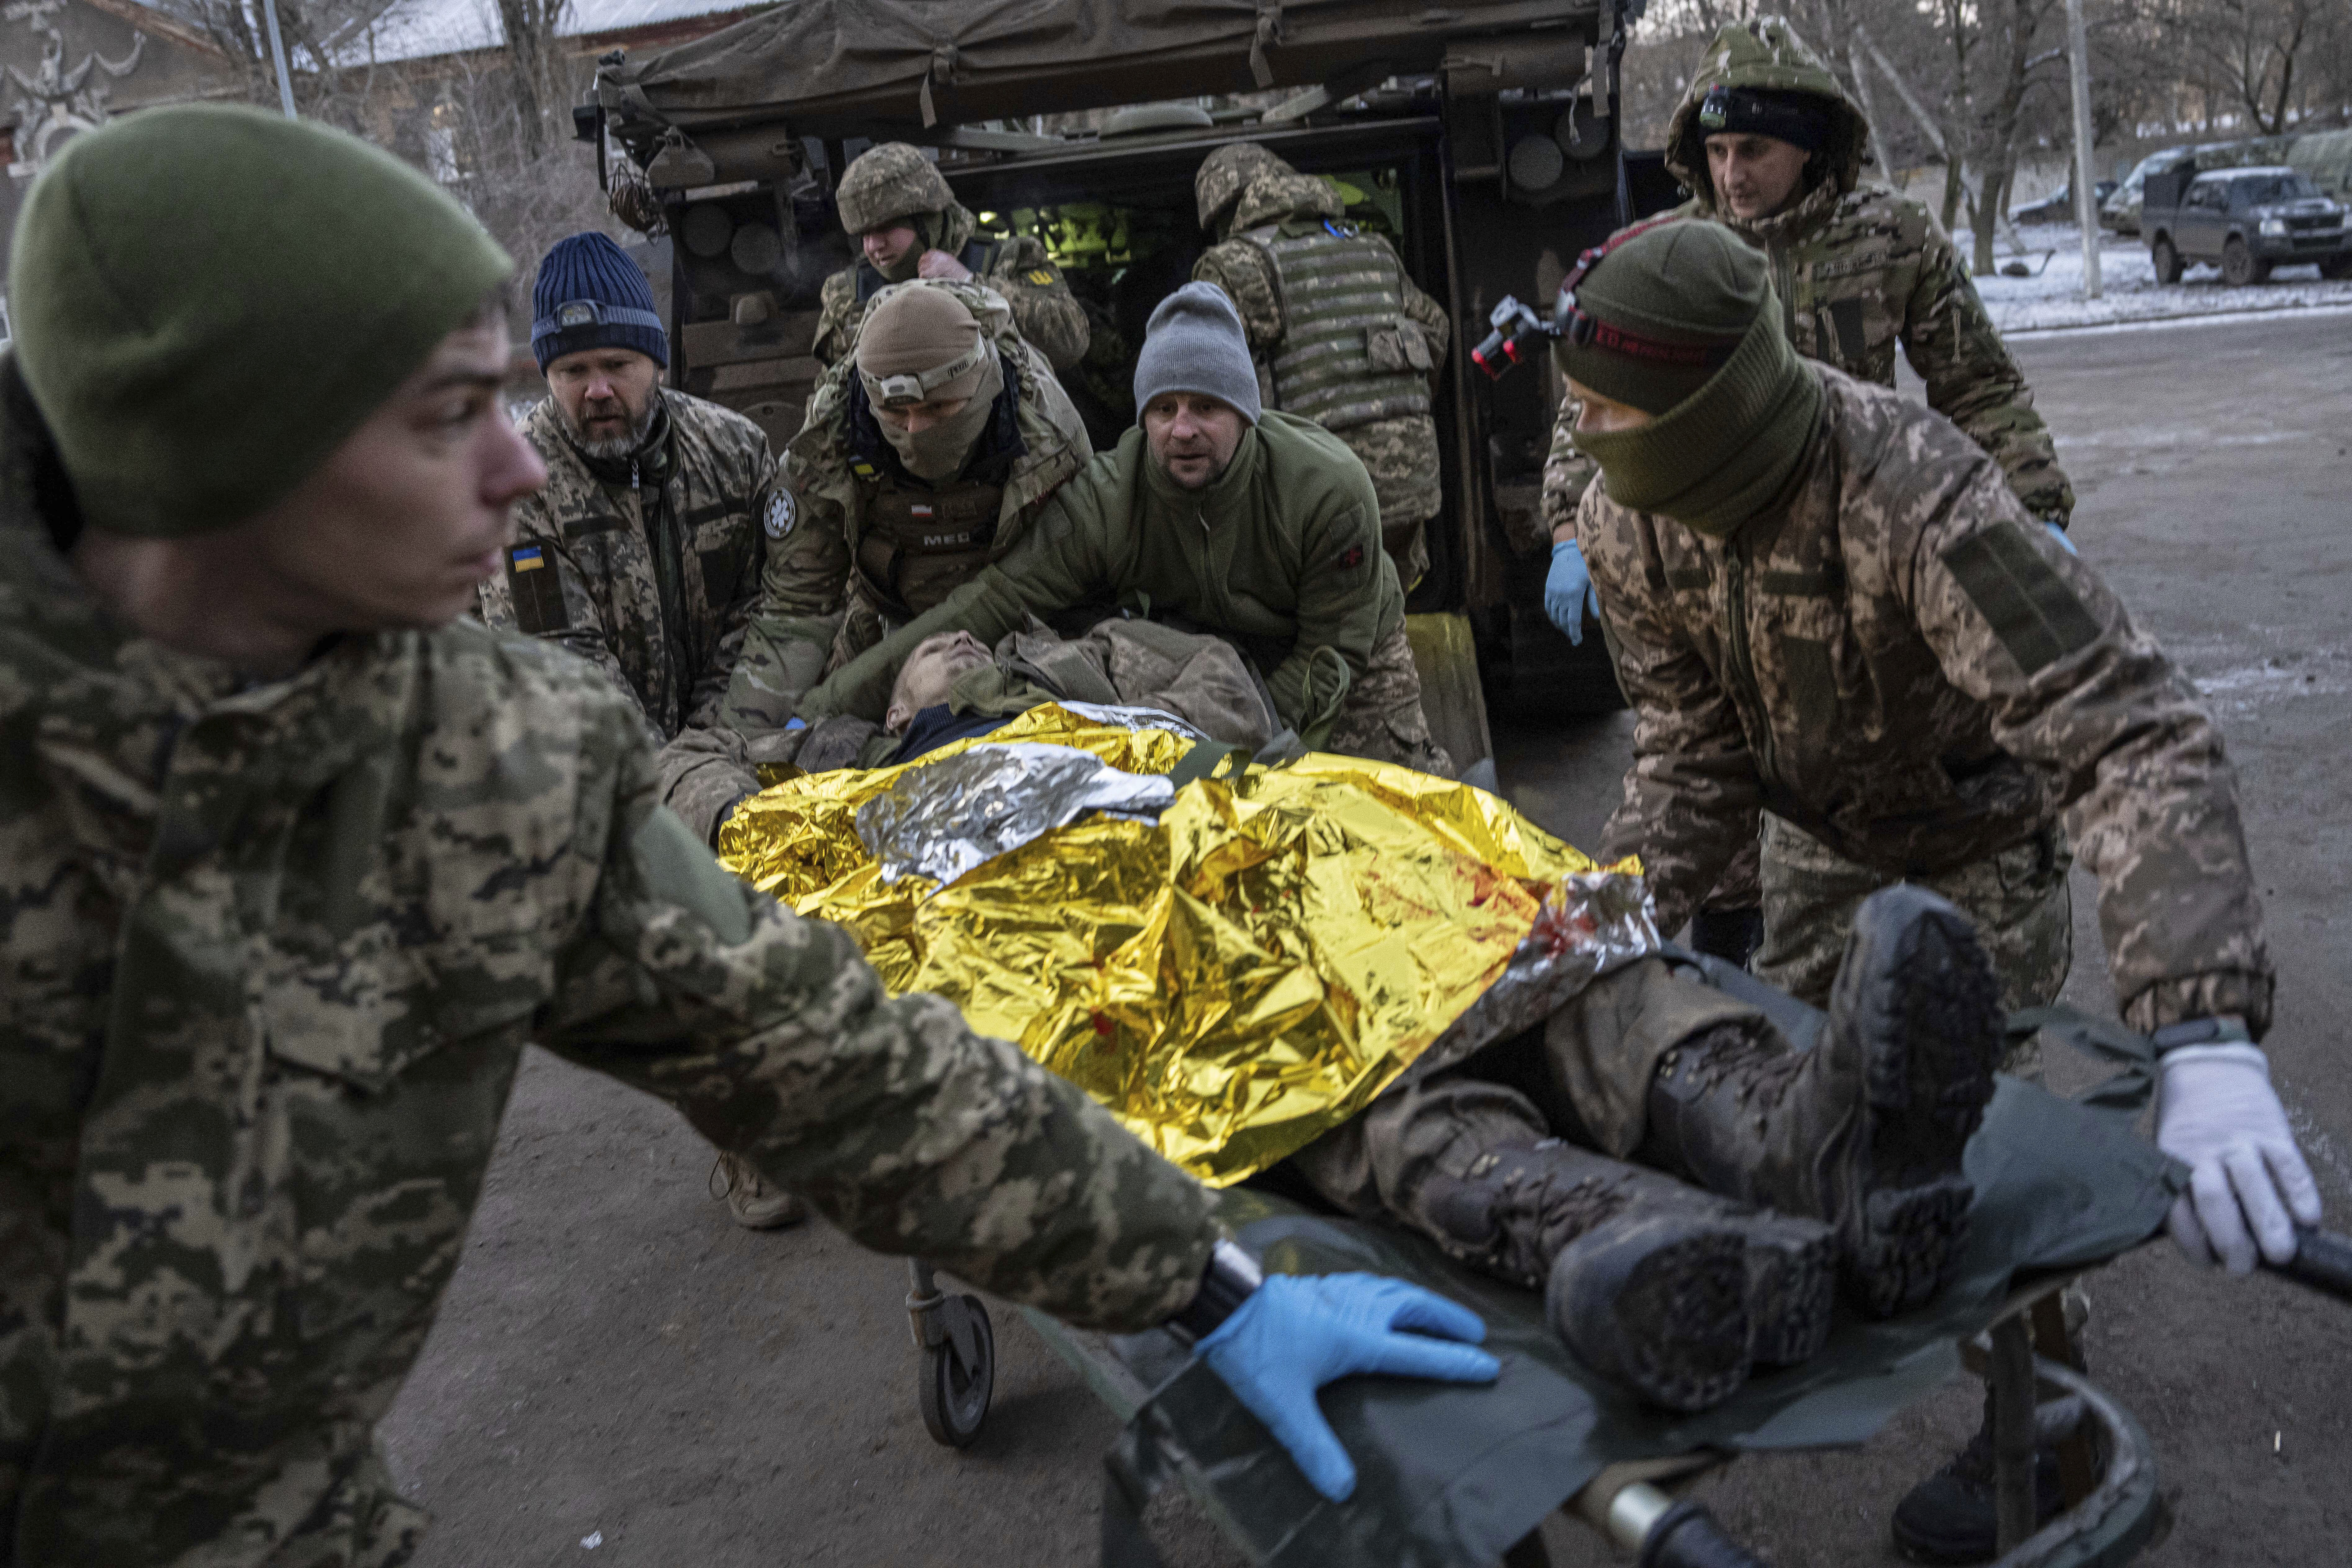 Médicos militares ucranianos trasladan a un soldado ucraniano herido desde el campo de batalla a un hospital en la región de Donetsk, en Ucrania, el lunes 9 de enero de 2023. El soldado no sobrevivió. (AP Foto/Evgeniy Maloletka)